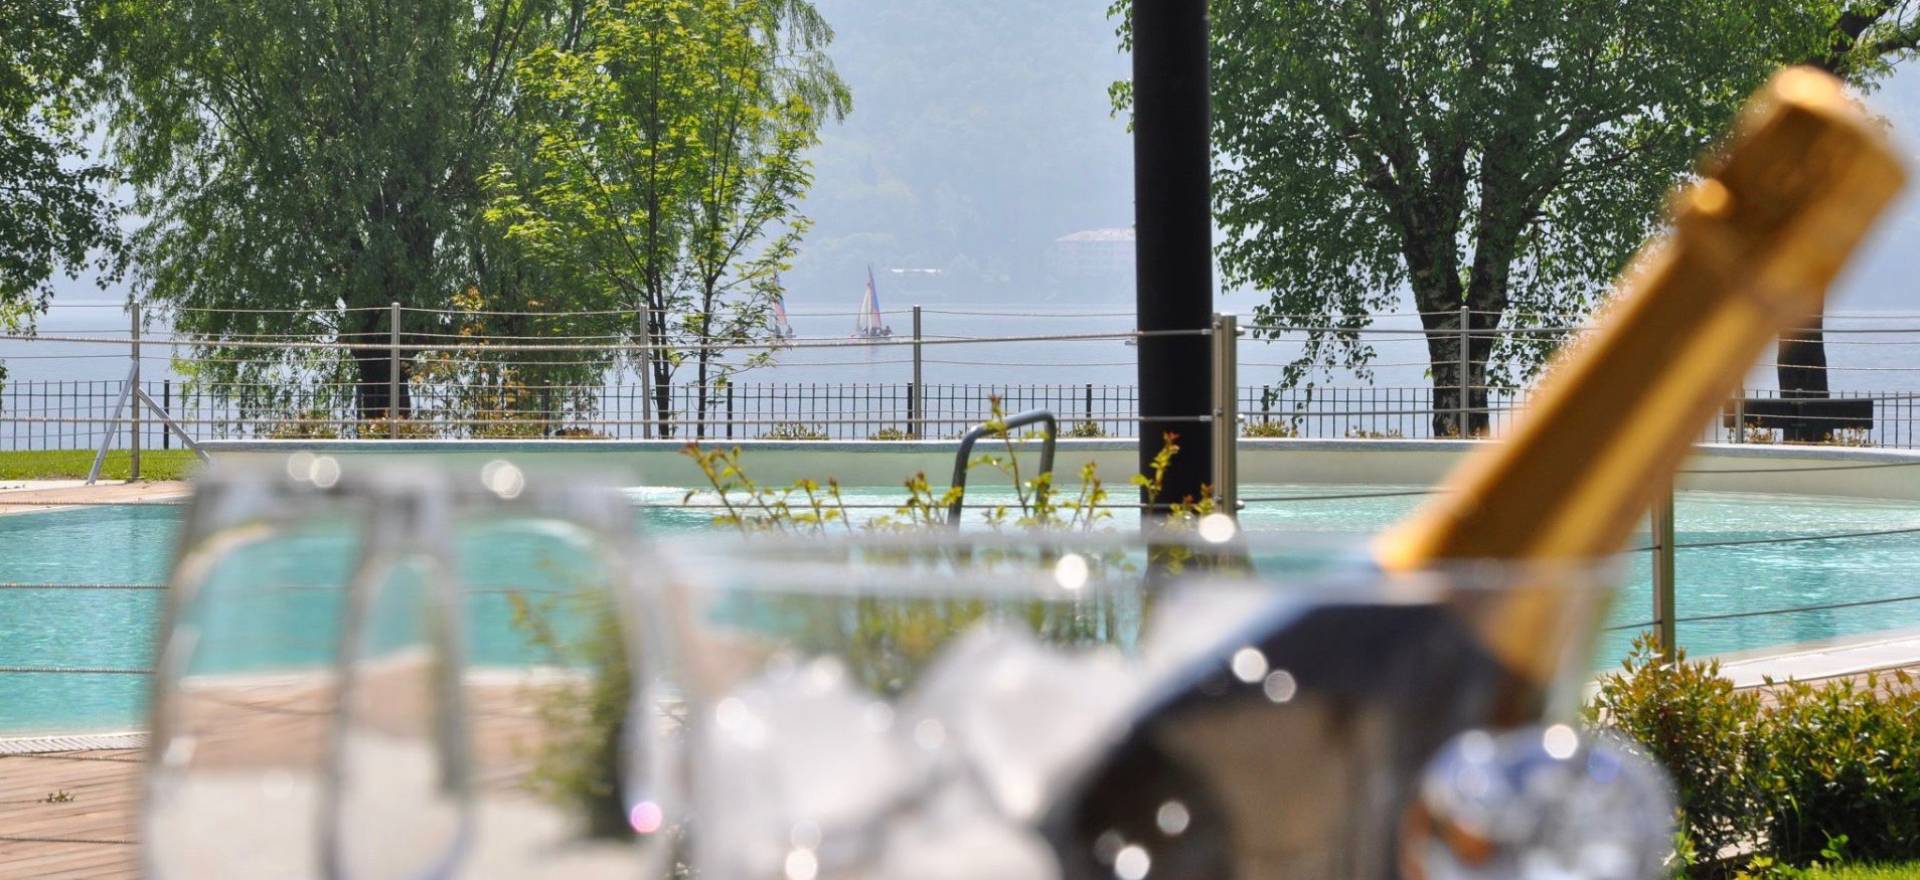 Agriturismo Lago di Como e lago di Garda Piccolo hotel di campagna in bella posizione sul lago di Como